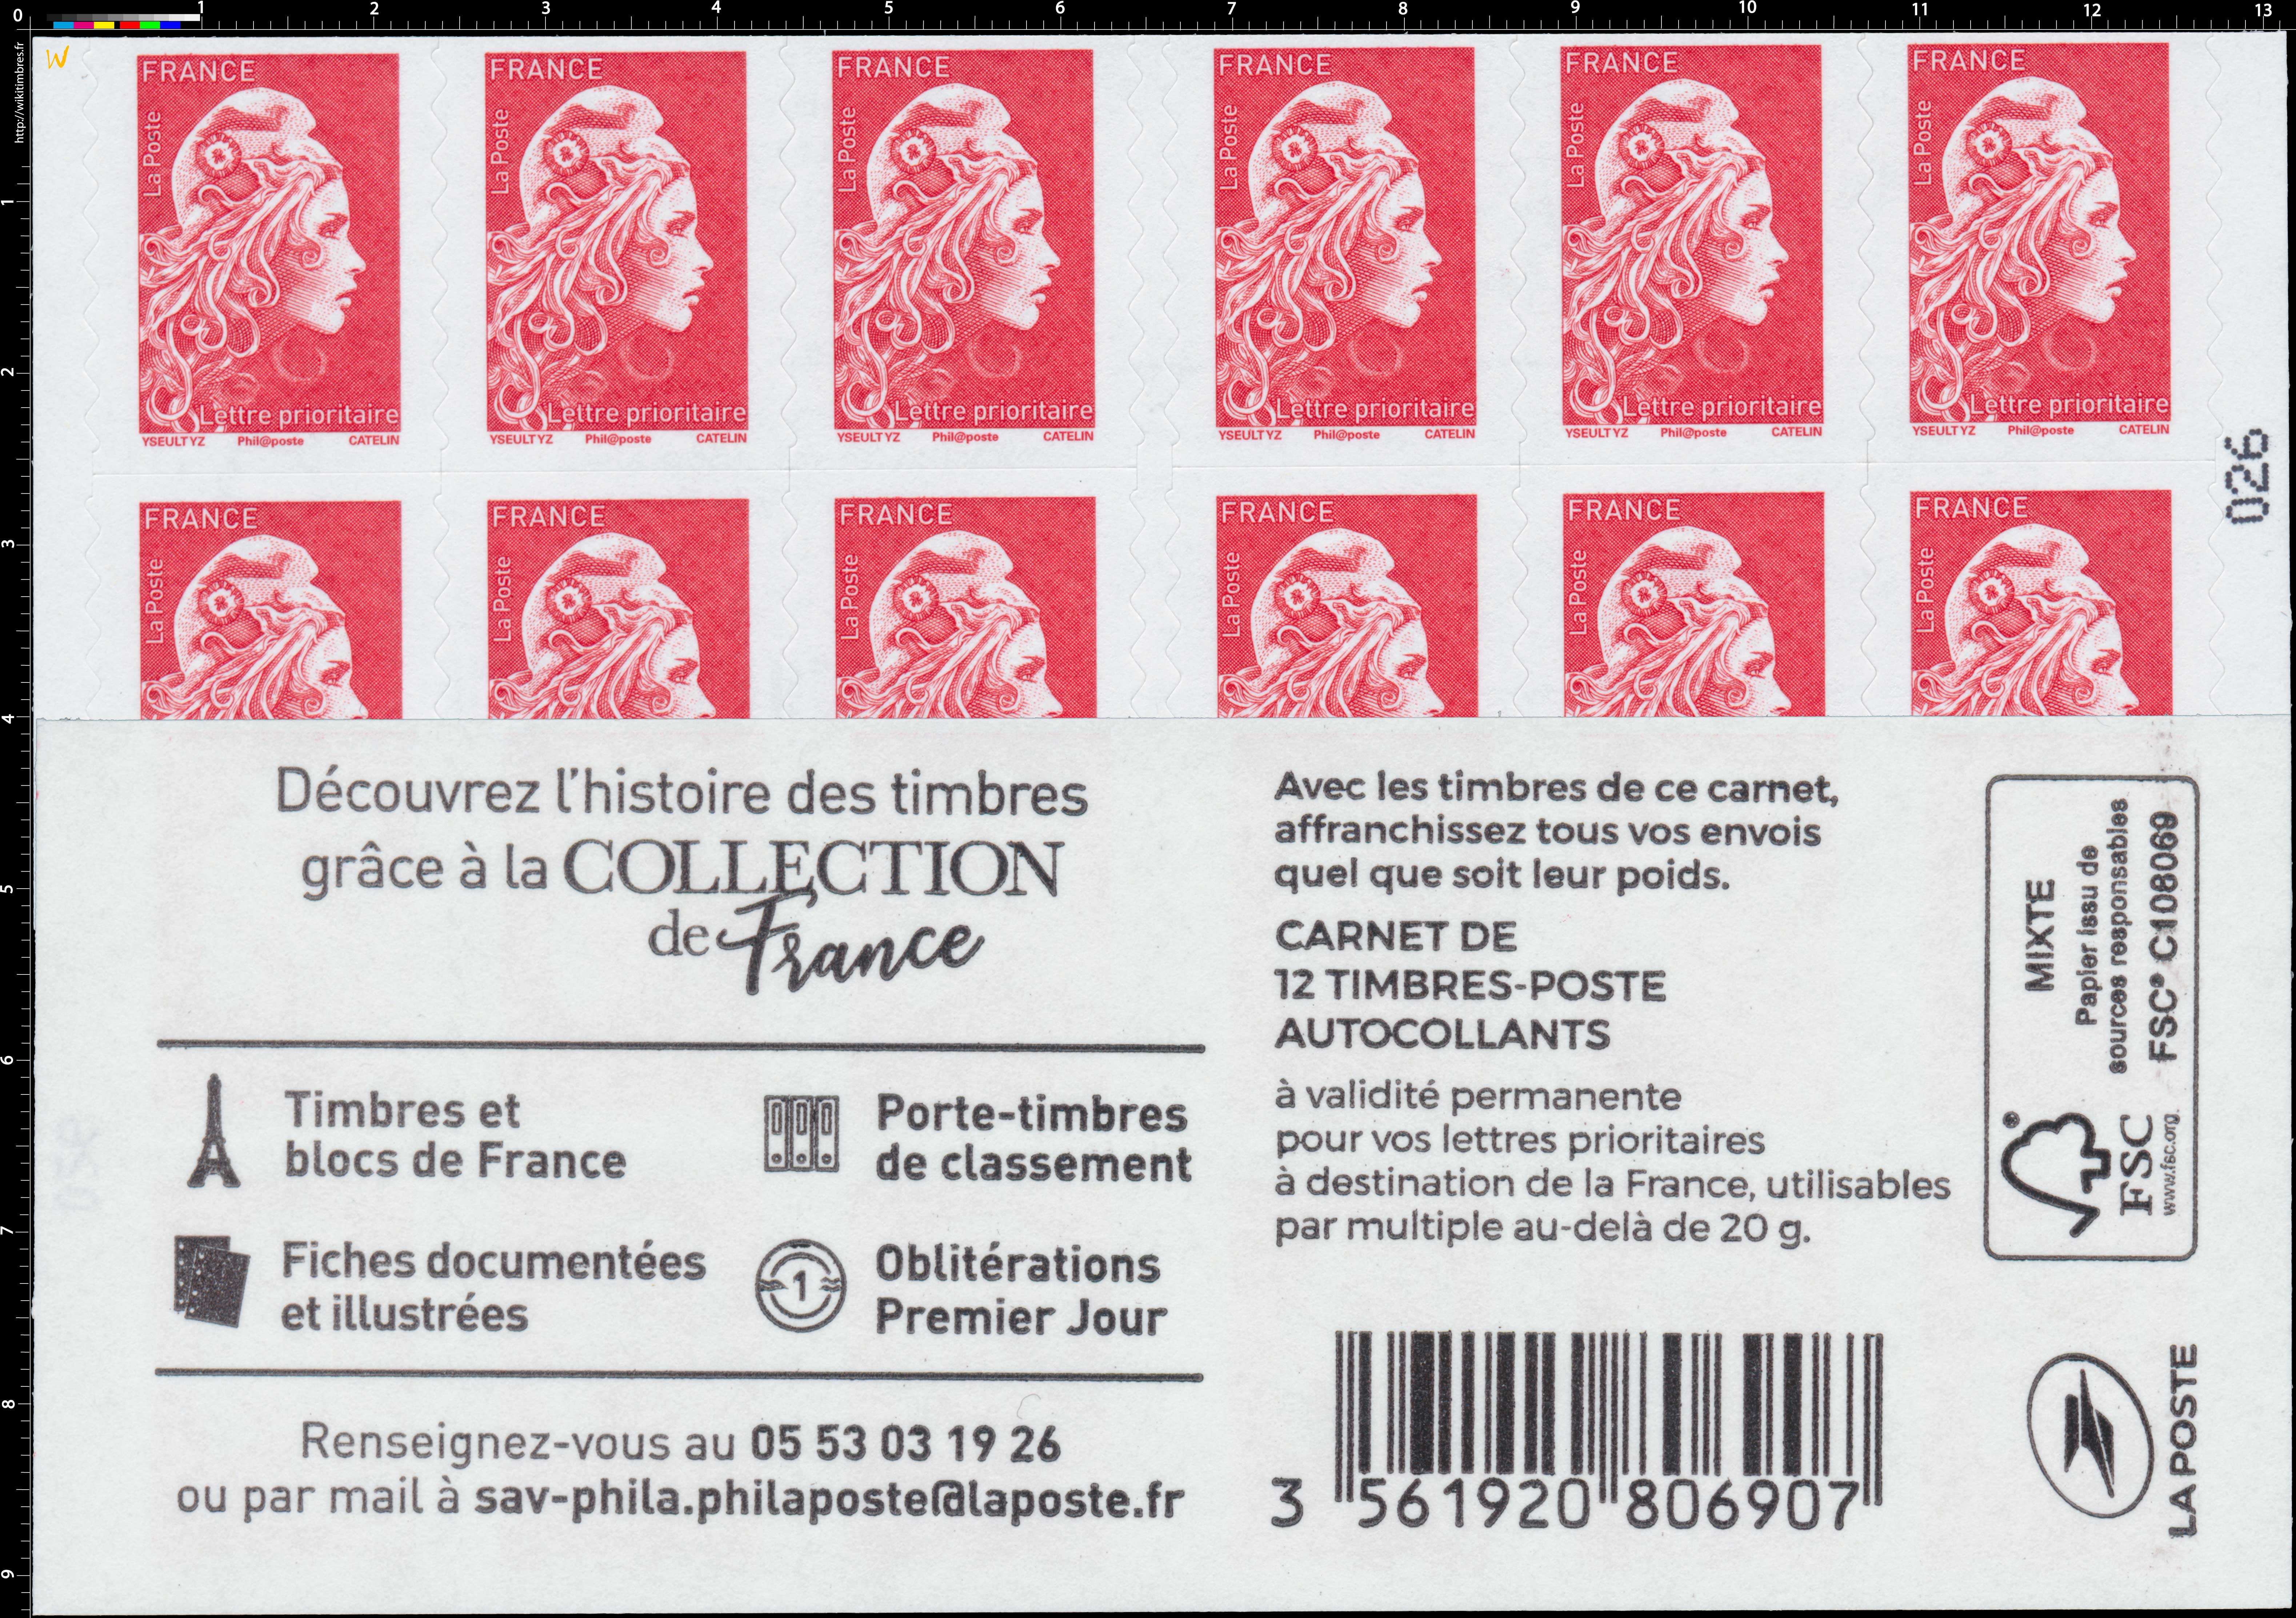 2020  Découvrez l'histoire des timbres grâce à la collection de France